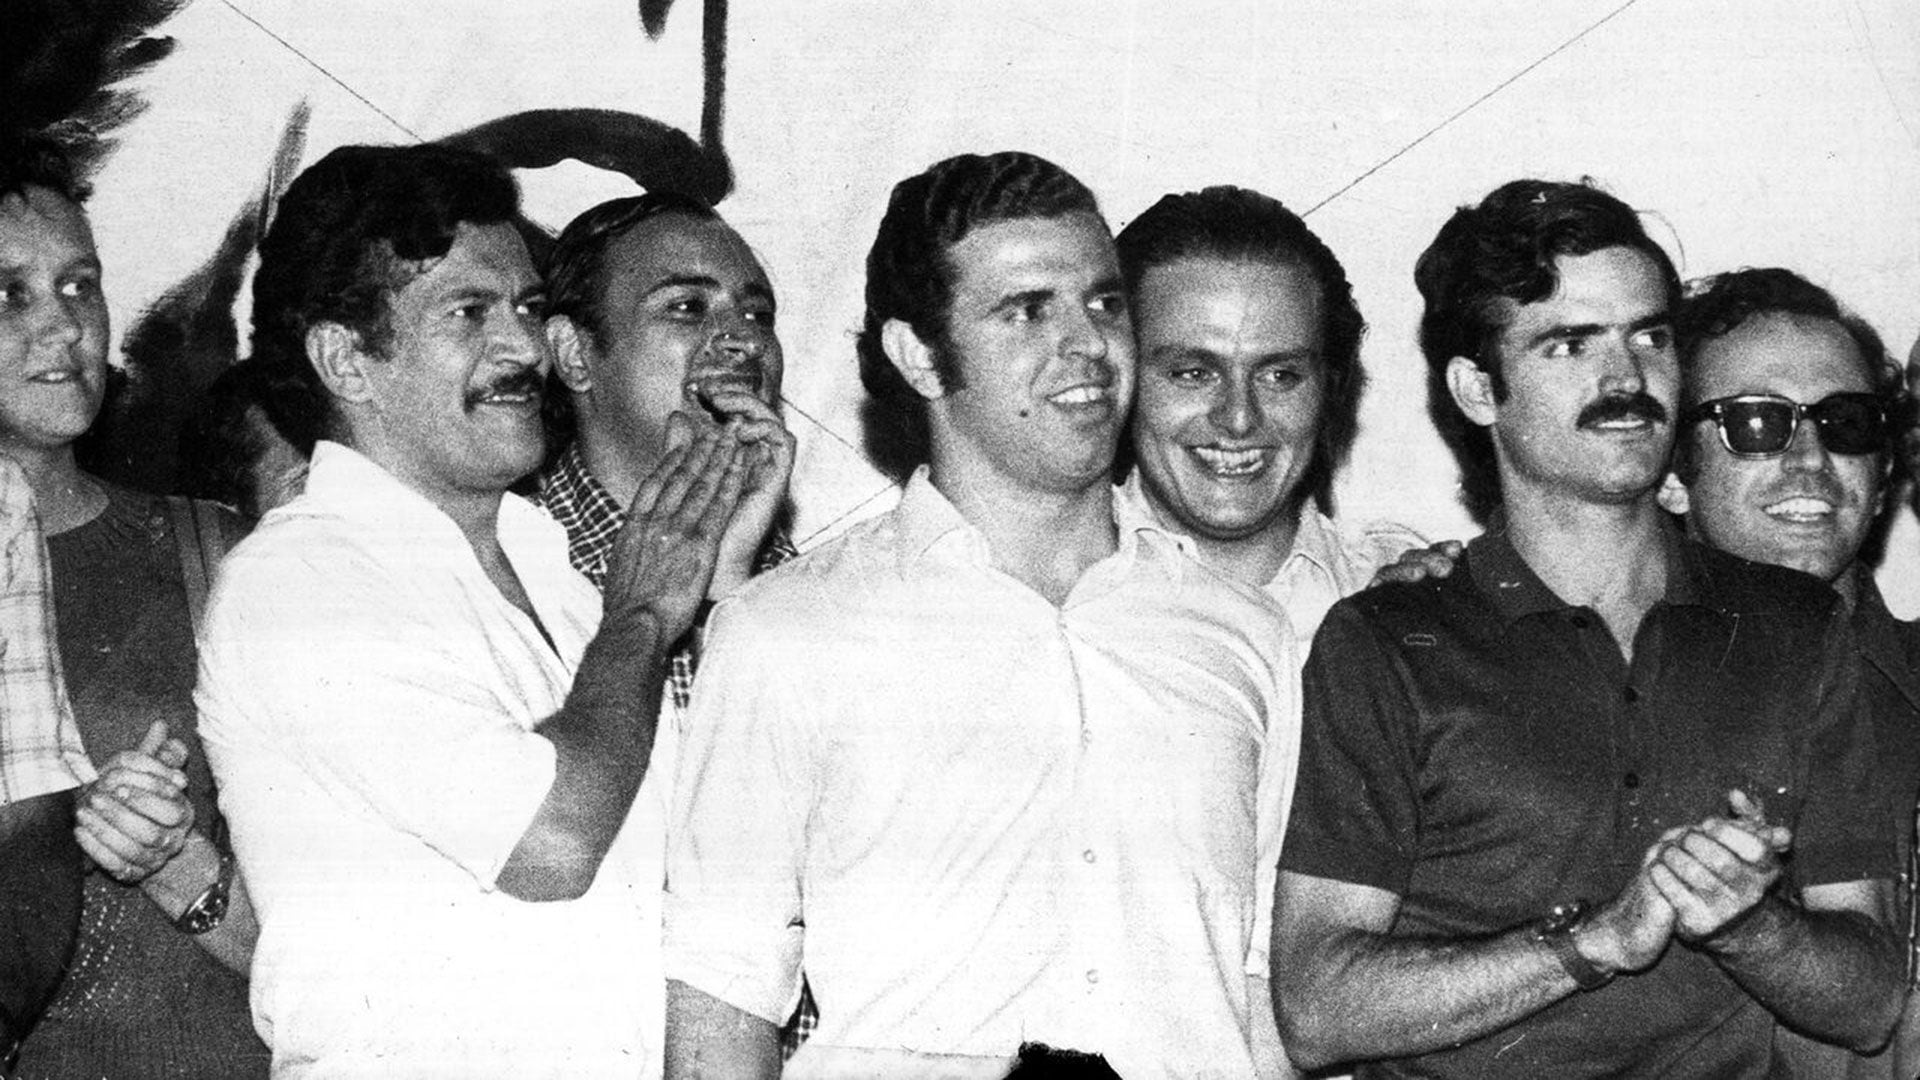 Firmenich, Roberto Quieto, Fernando Vaca Narvaja y detrás un sonriente Galimberti